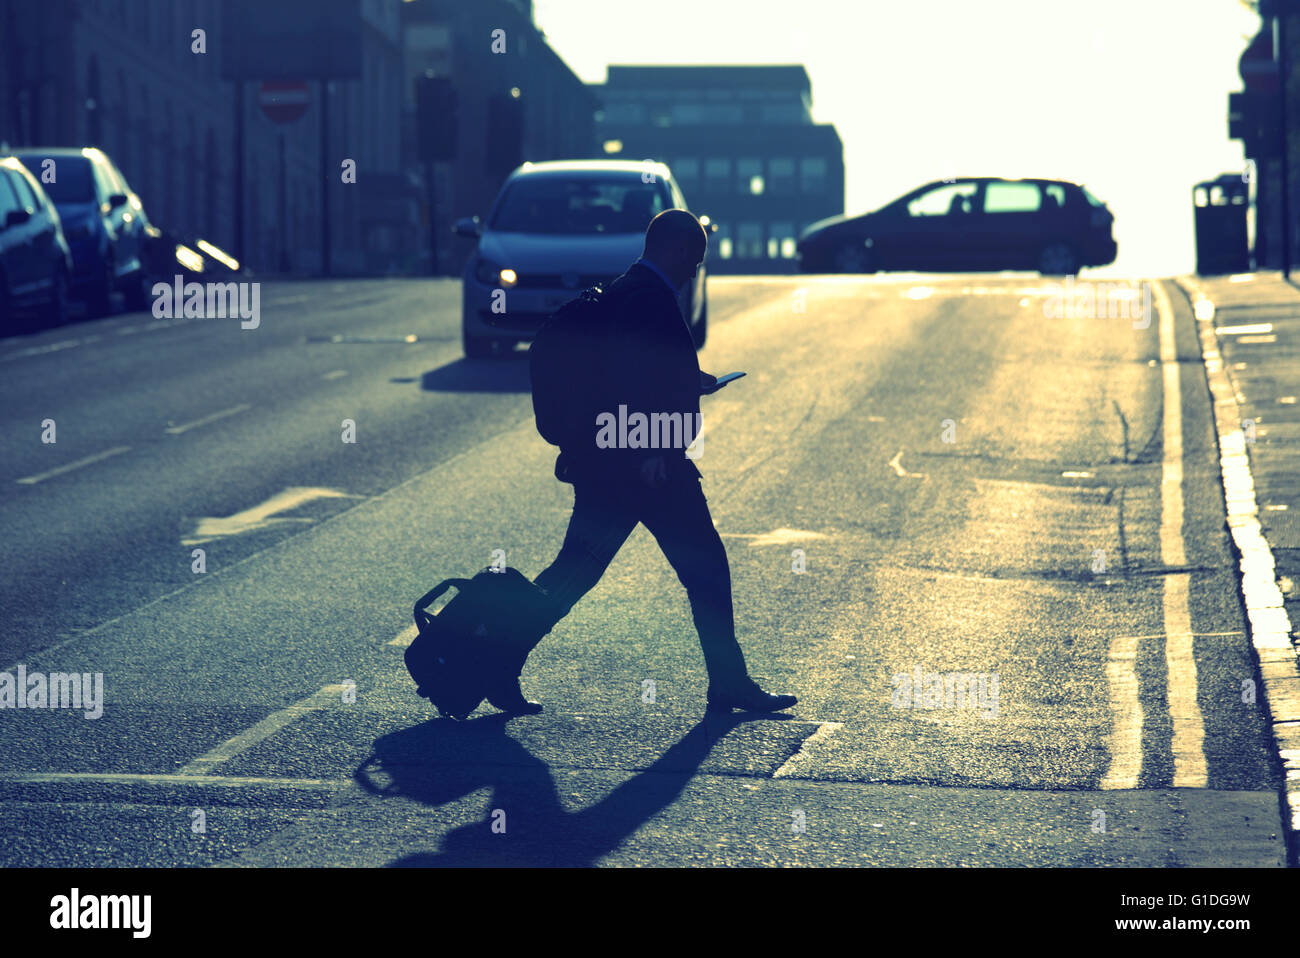 Silhouette des Mannes auf dem Handy mit bei Glasgow ulica Straße Contre-Jour Hintergrundbeleuchtung in Glasgow, Schottland, Großbritannien. Stockfoto